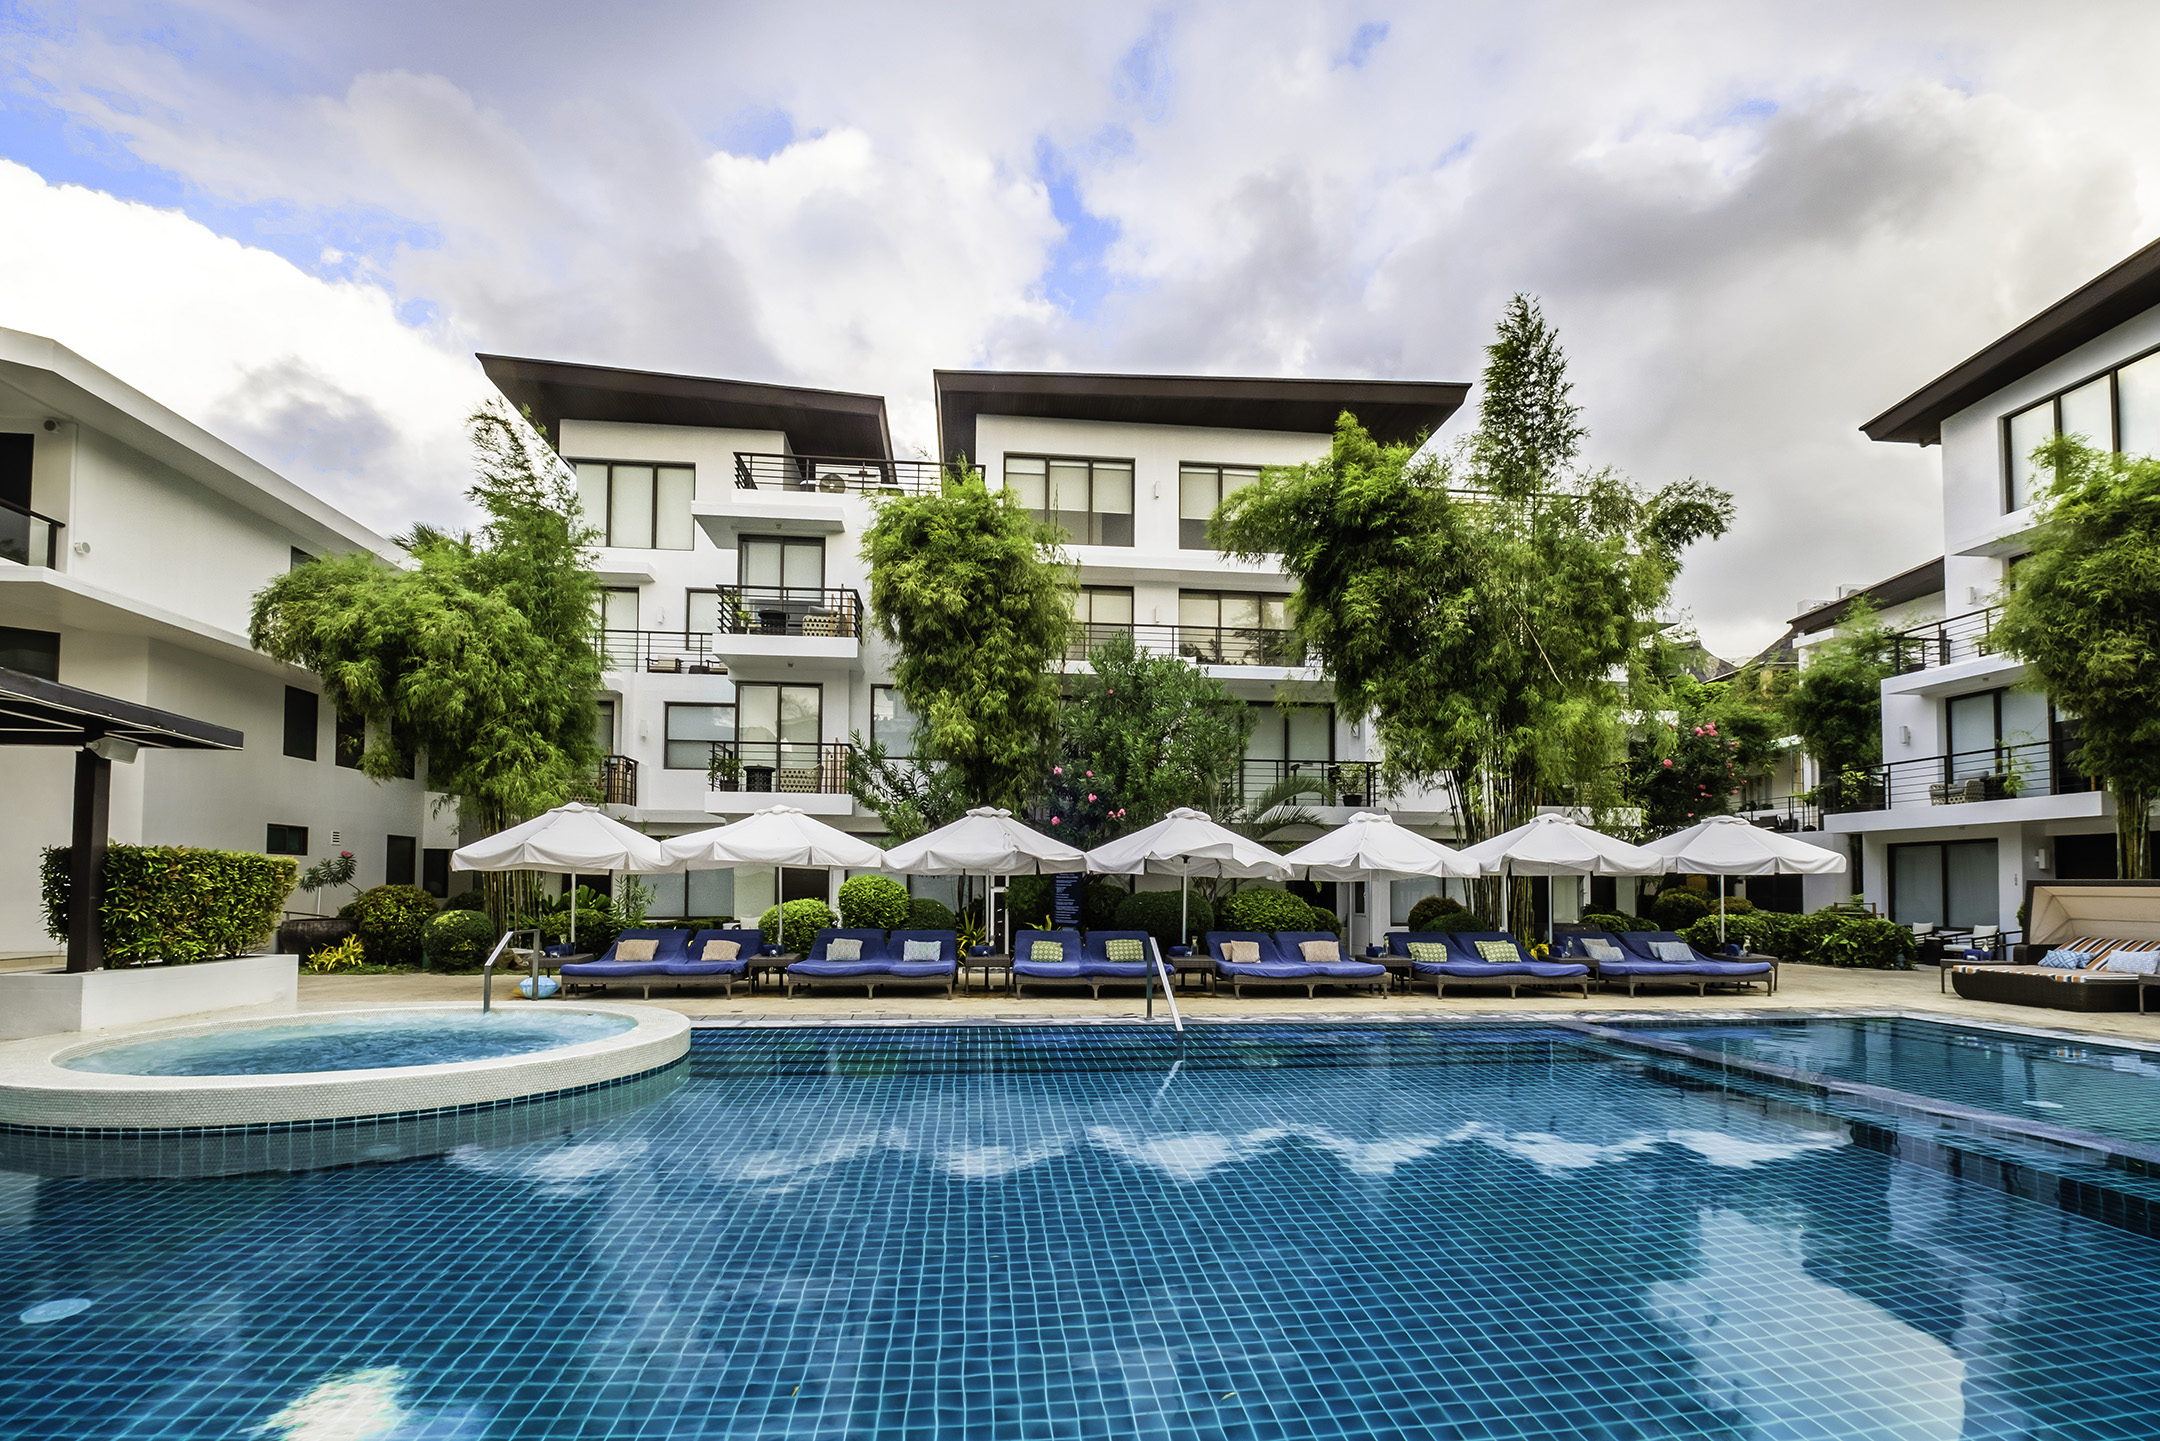 Boracay Luxury Resort Hotel | Discovery Shores Boracay ...